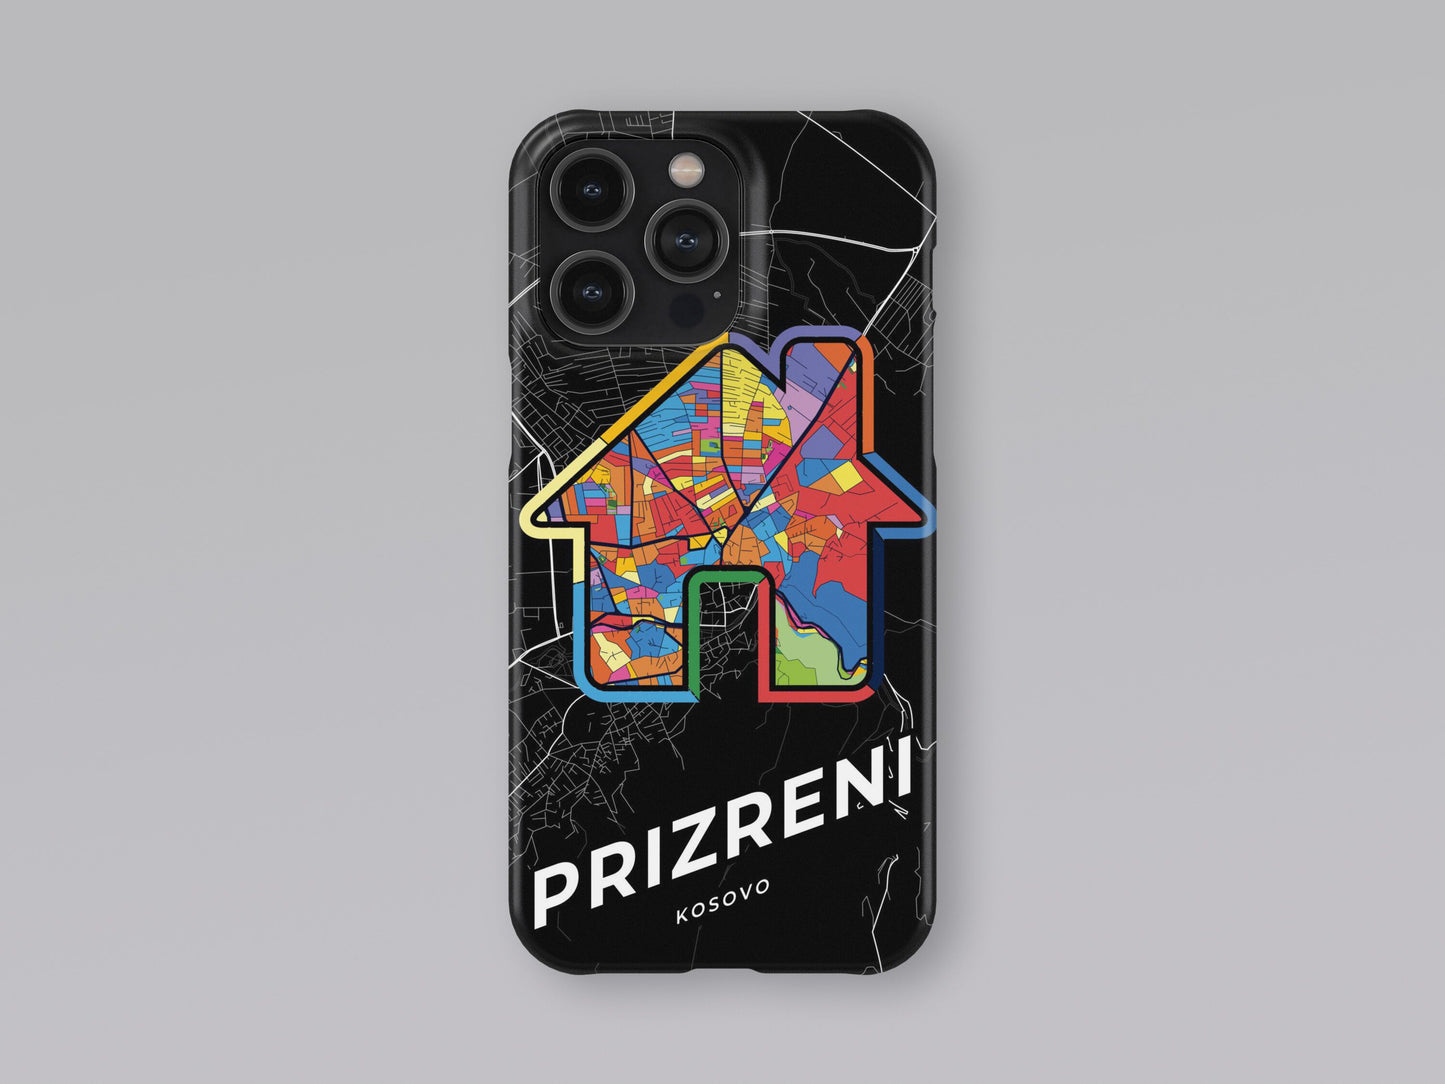 Prizreni / Prizren Kosovo slim phone case with colorful icon. Birthday, wedding or housewarming gift. Couple match cases. 3